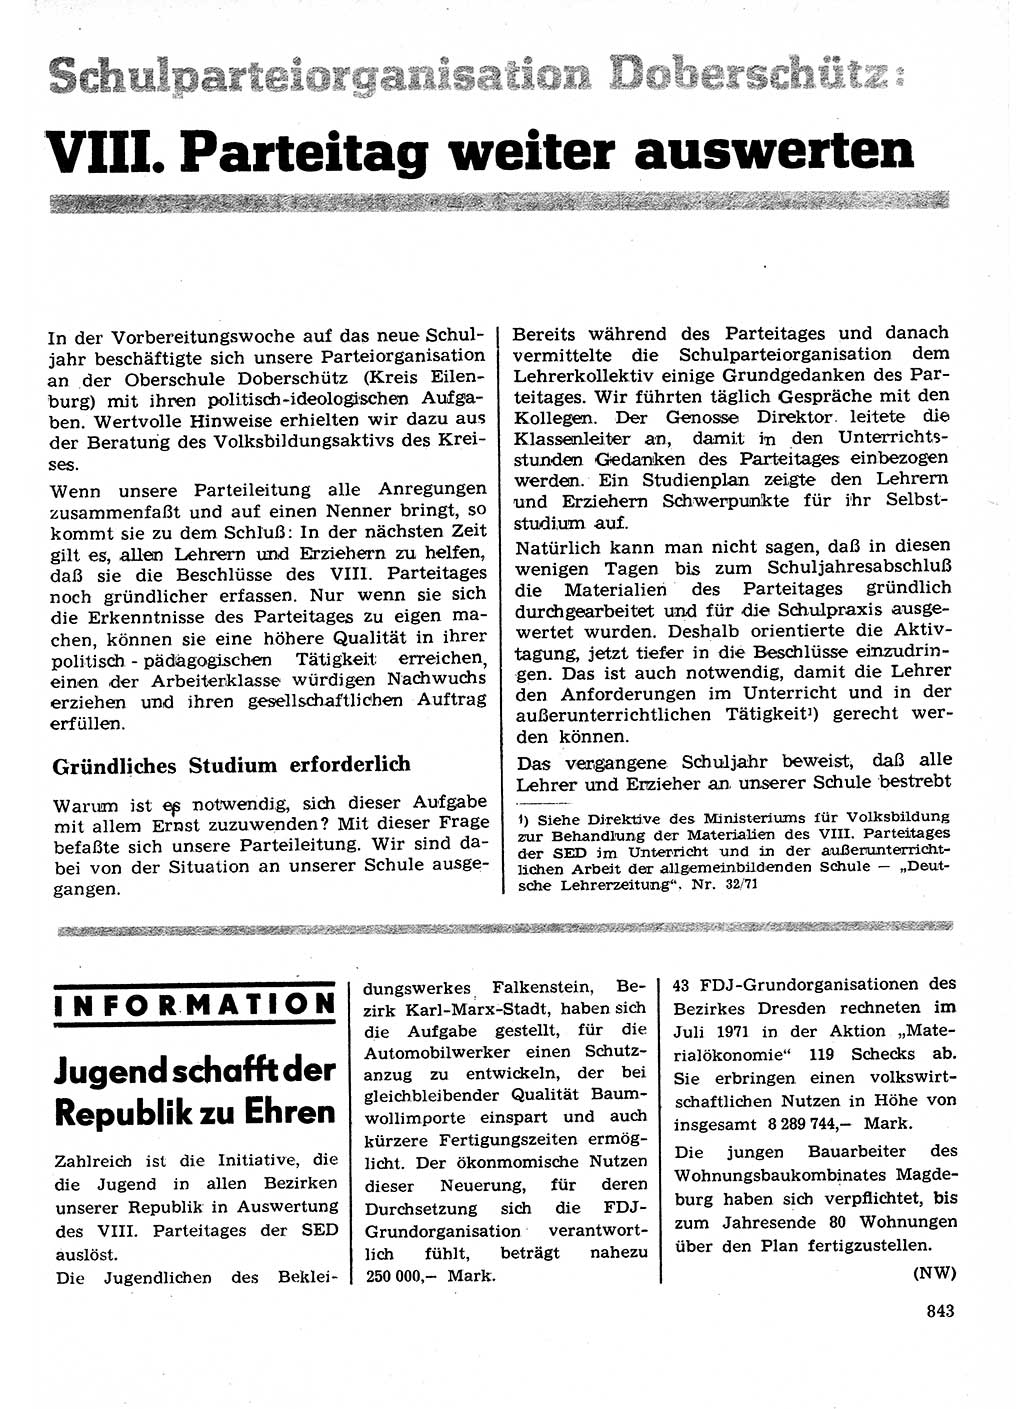 Neuer Weg (NW), Organ des Zentralkomitees (ZK) der SED (Sozialistische Einheitspartei Deutschlands) für Fragen des Parteilebens, 26. Jahrgang [Deutsche Demokratische Republik (DDR)] 1971, Seite 843 (NW ZK SED DDR 1971, S. 843)